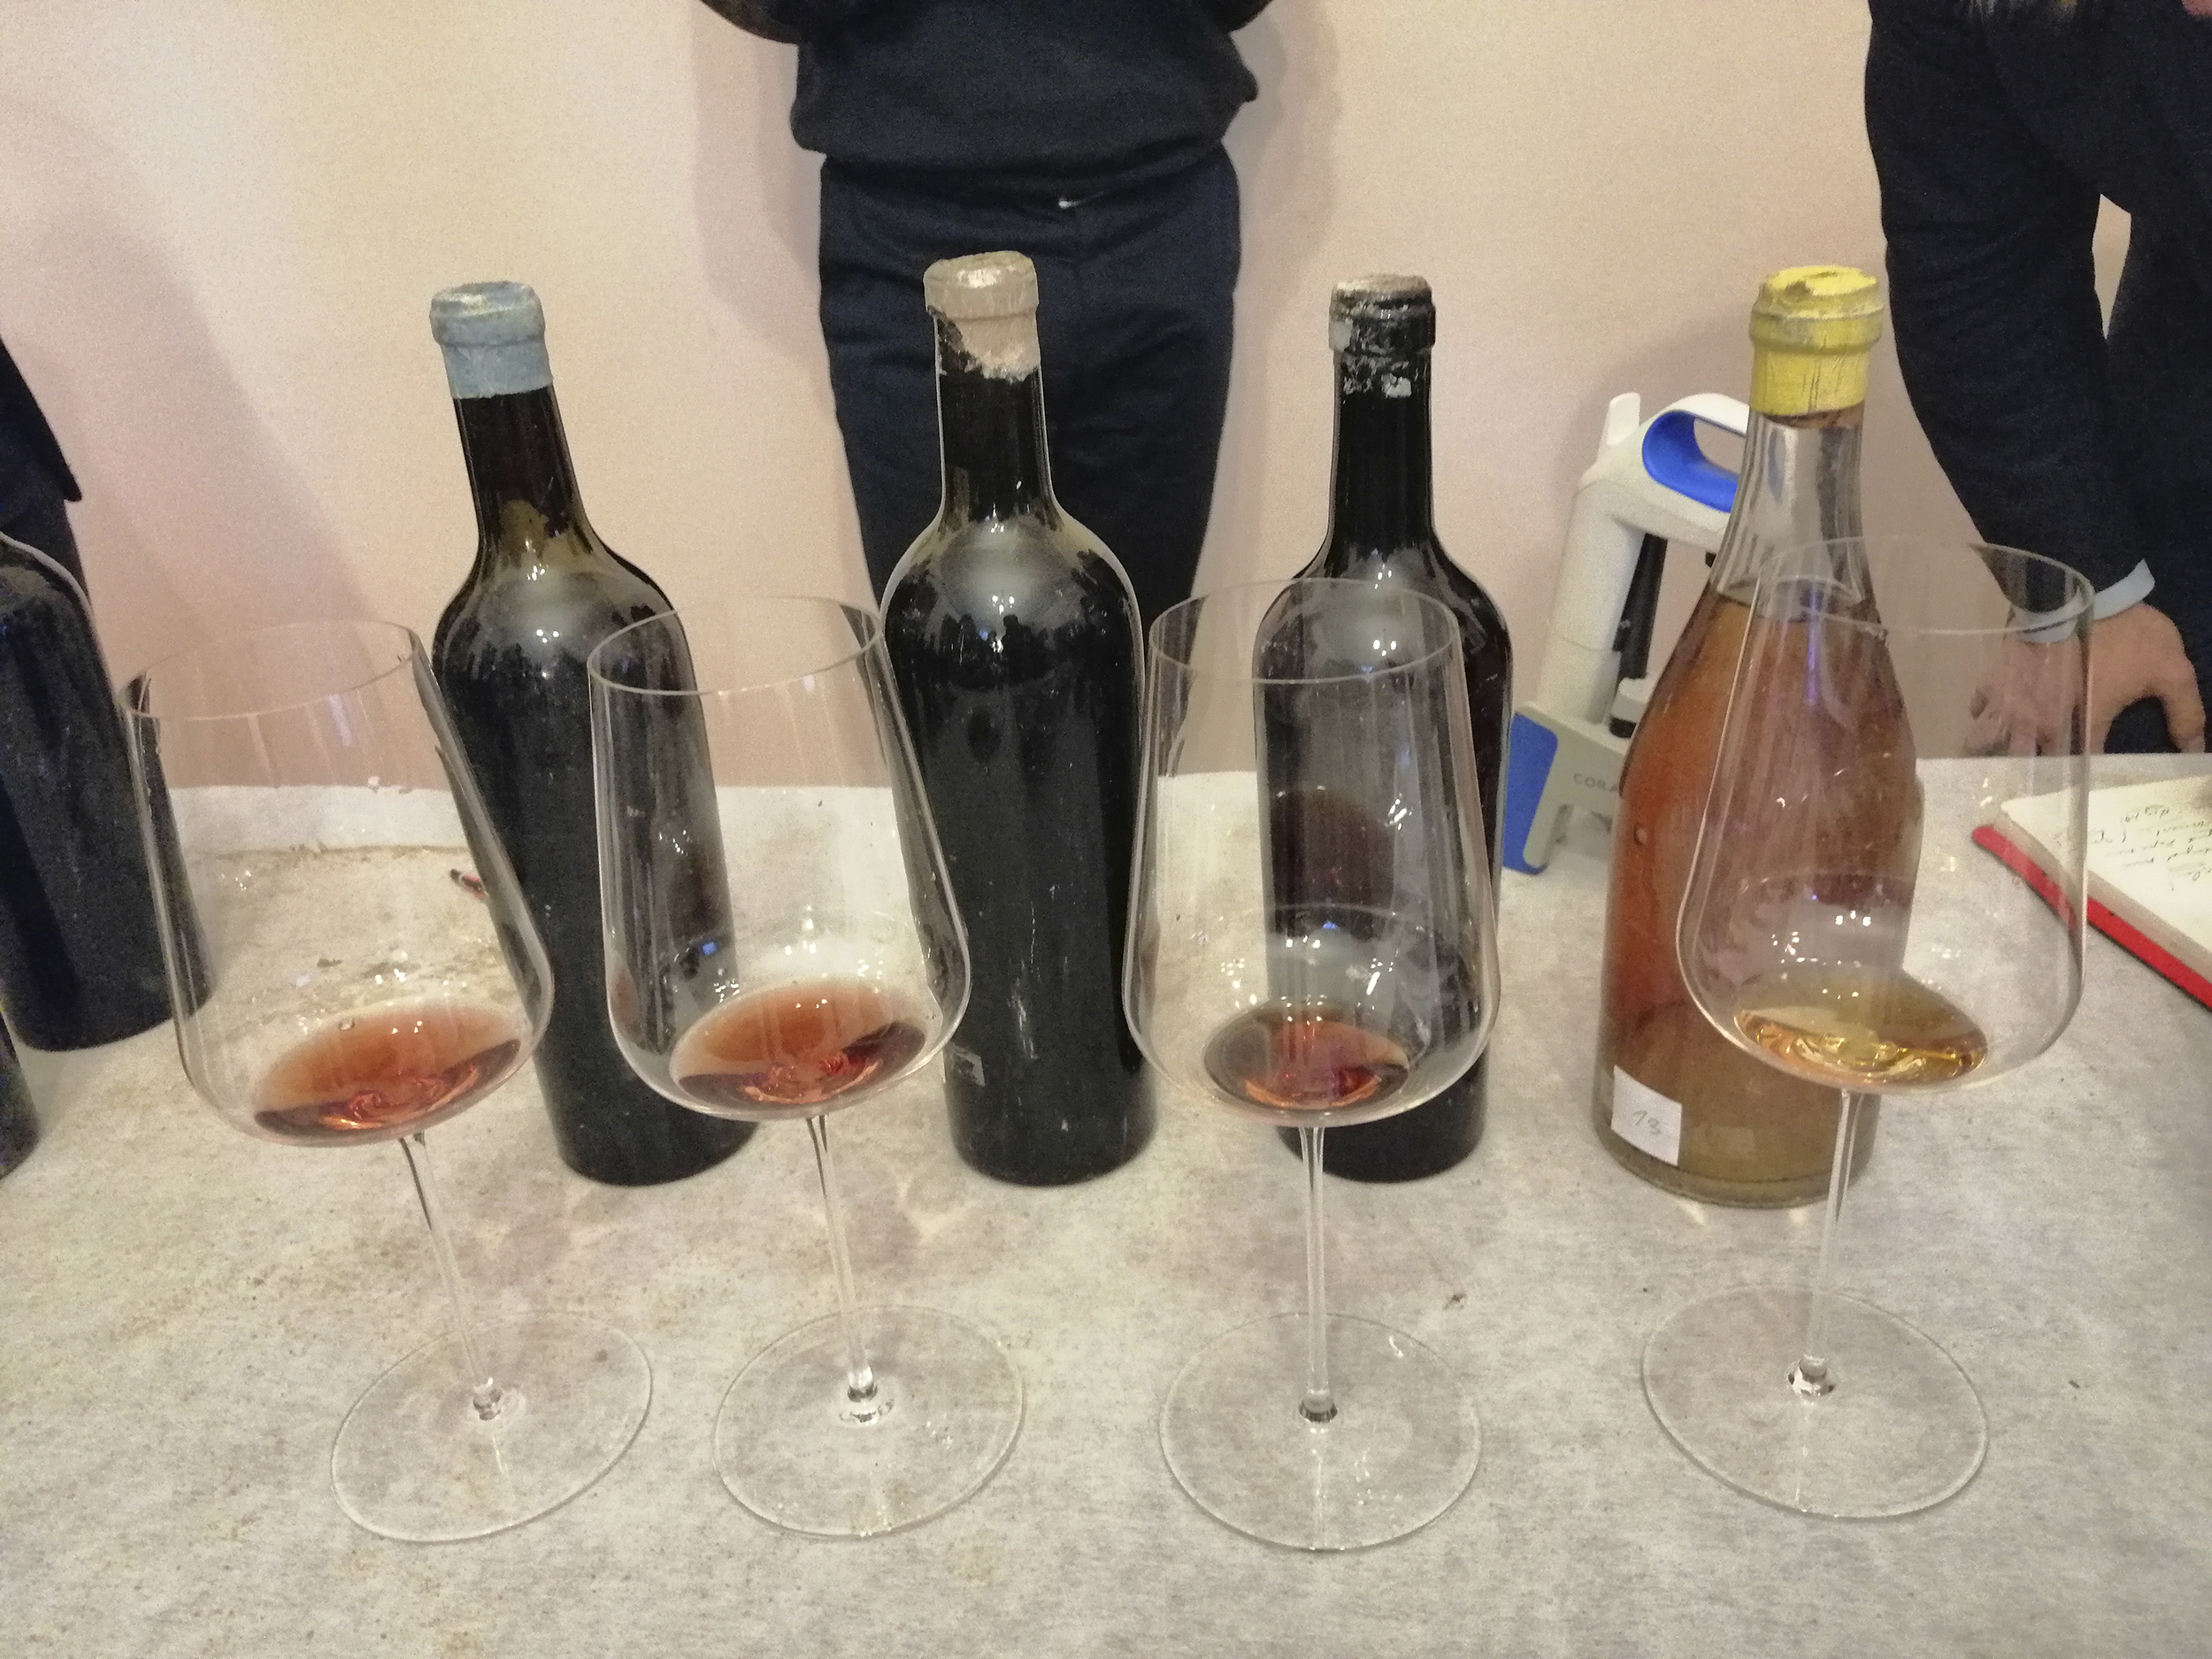 Fotografia. Trzy butelki do wina o ciemnym zabarwieniu i jedna z jasnego szkła pokryte kurzem, przed nimi ustawione kieliszki do wina z odrobiną napoju w środku.